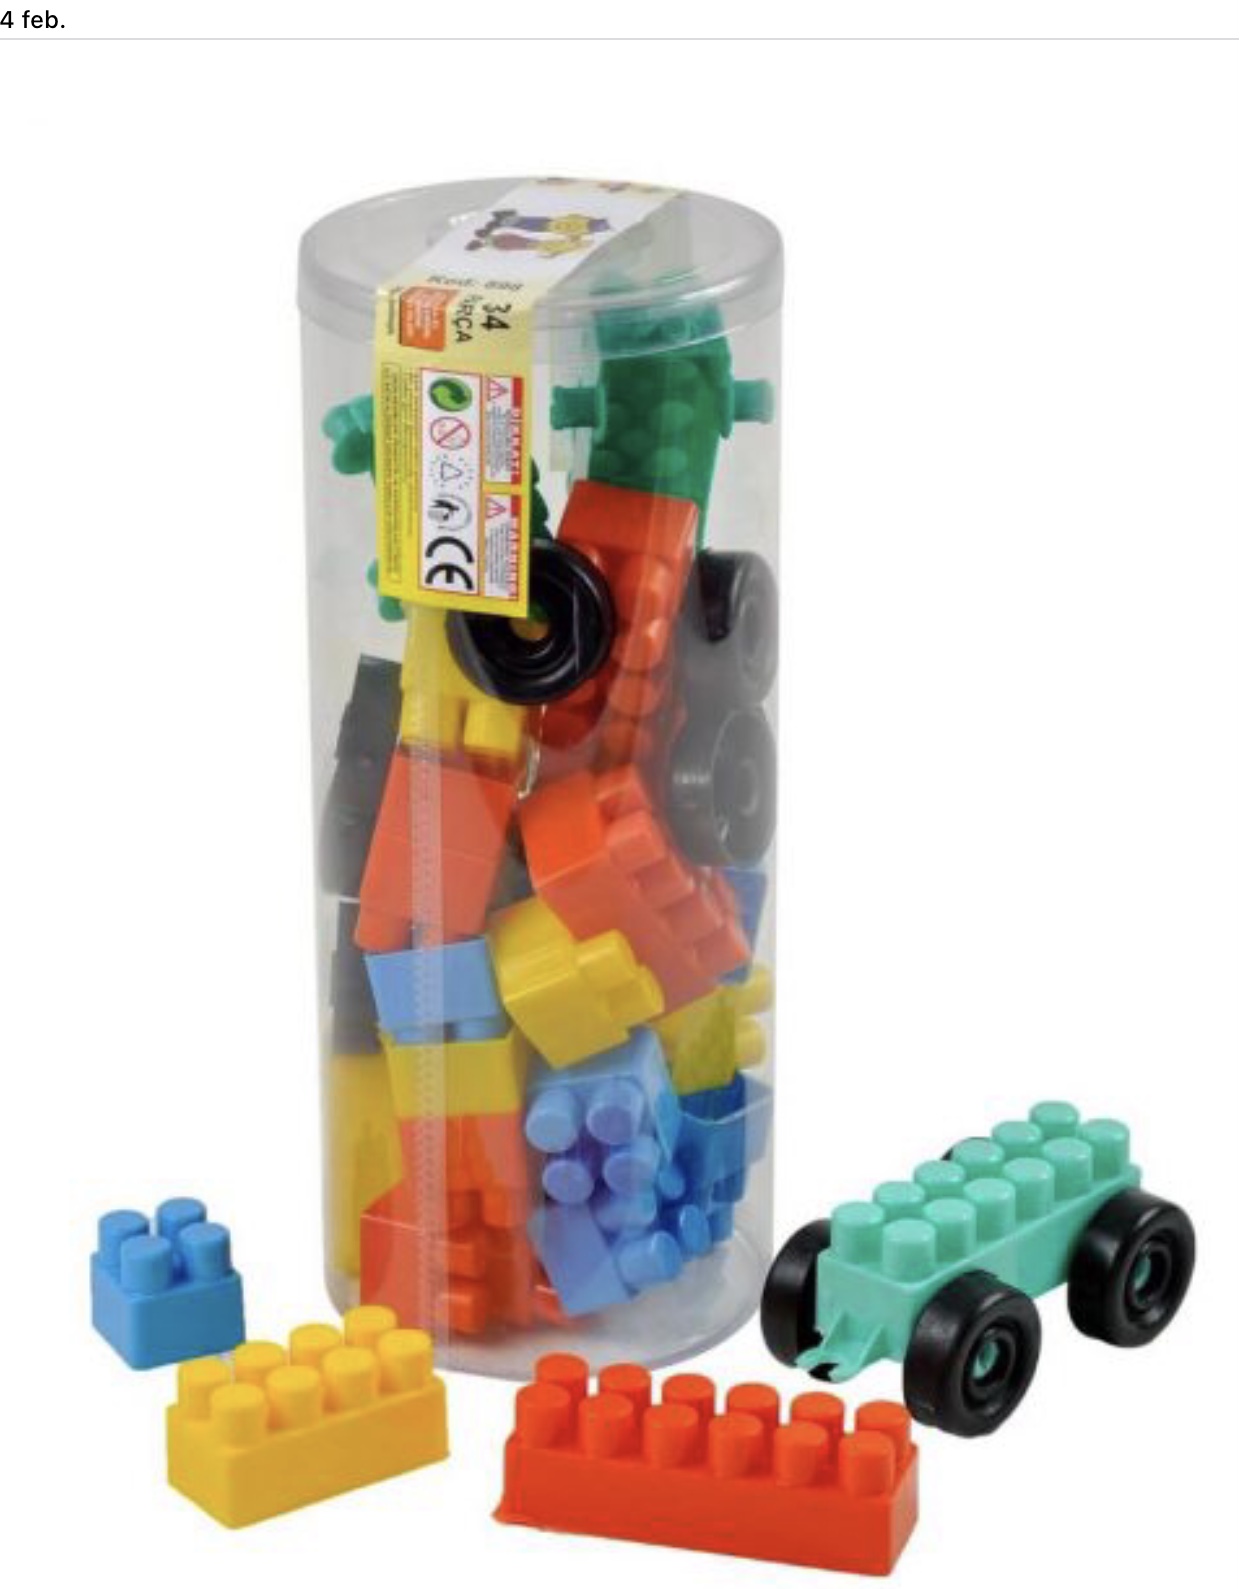 Set cuburi de construcții din plastic ce se pot construi diverse jocuri care contribuie la dezvoltarea intelectuală a copilului setul conține 30 de bucăți de cărămizi din plastic